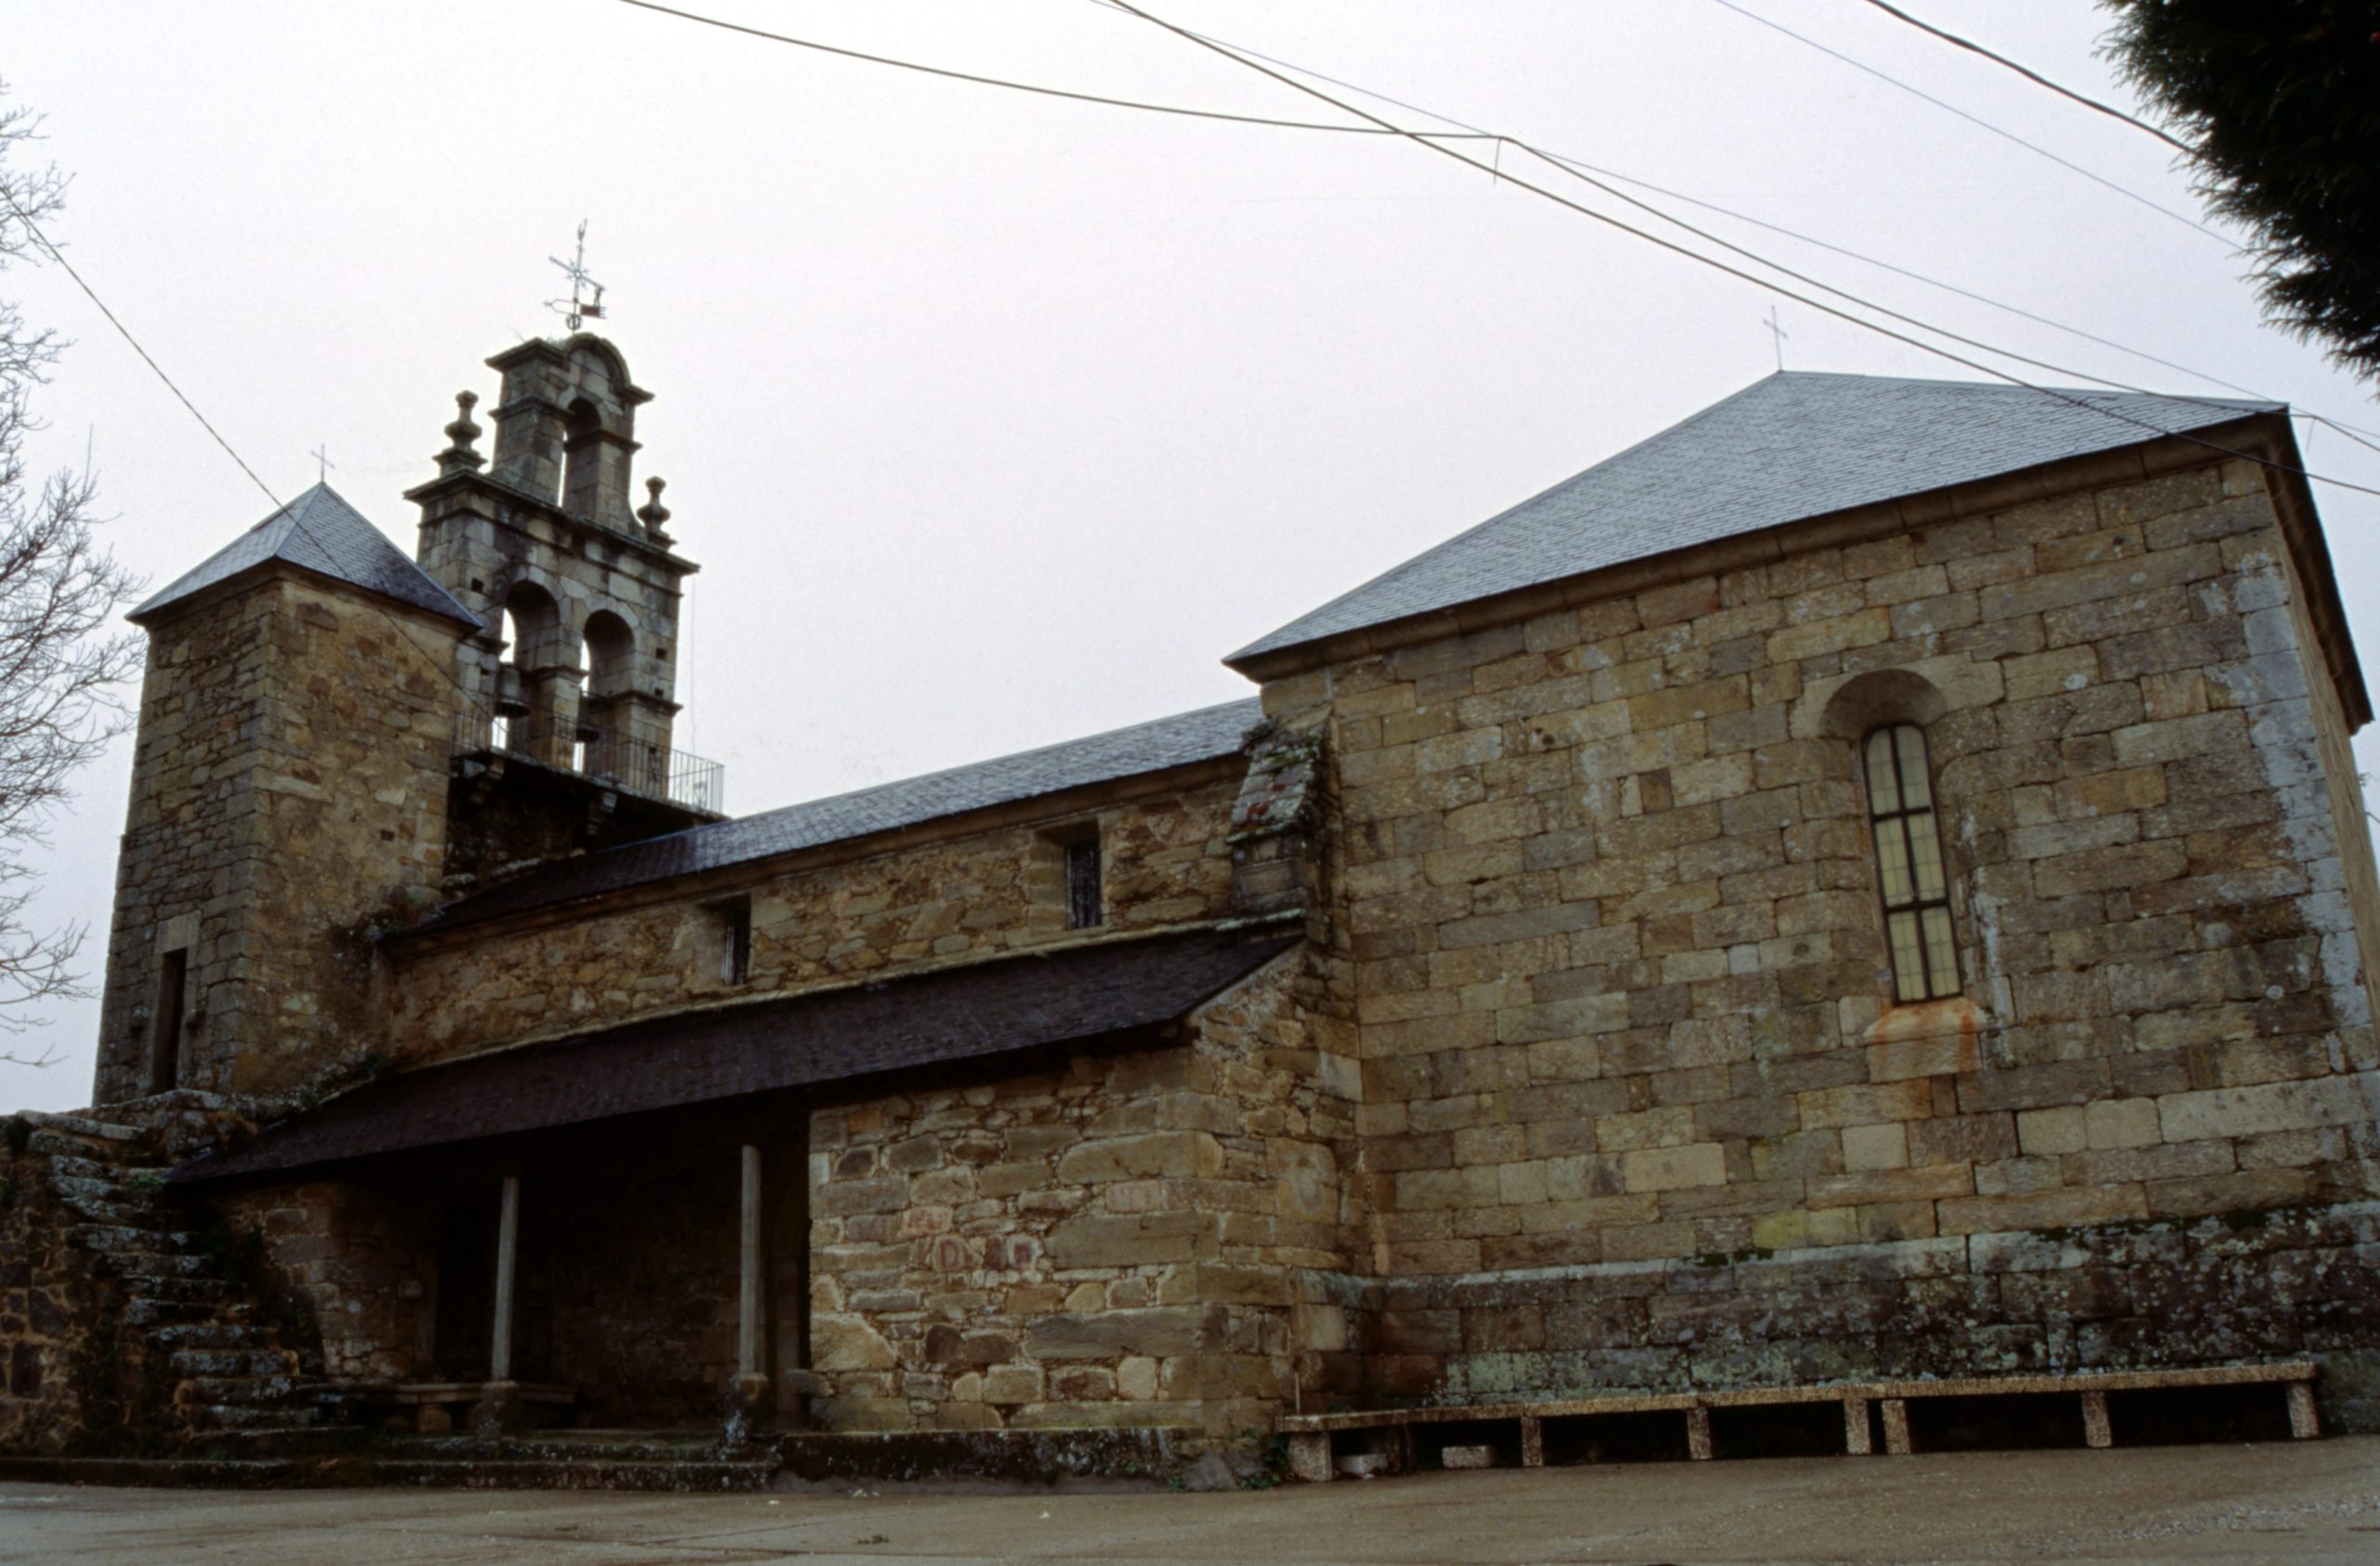 Trabajos de conservación y restauración de la techumbre en madera policromada de la Iglesia de Paramio, Zamora, España